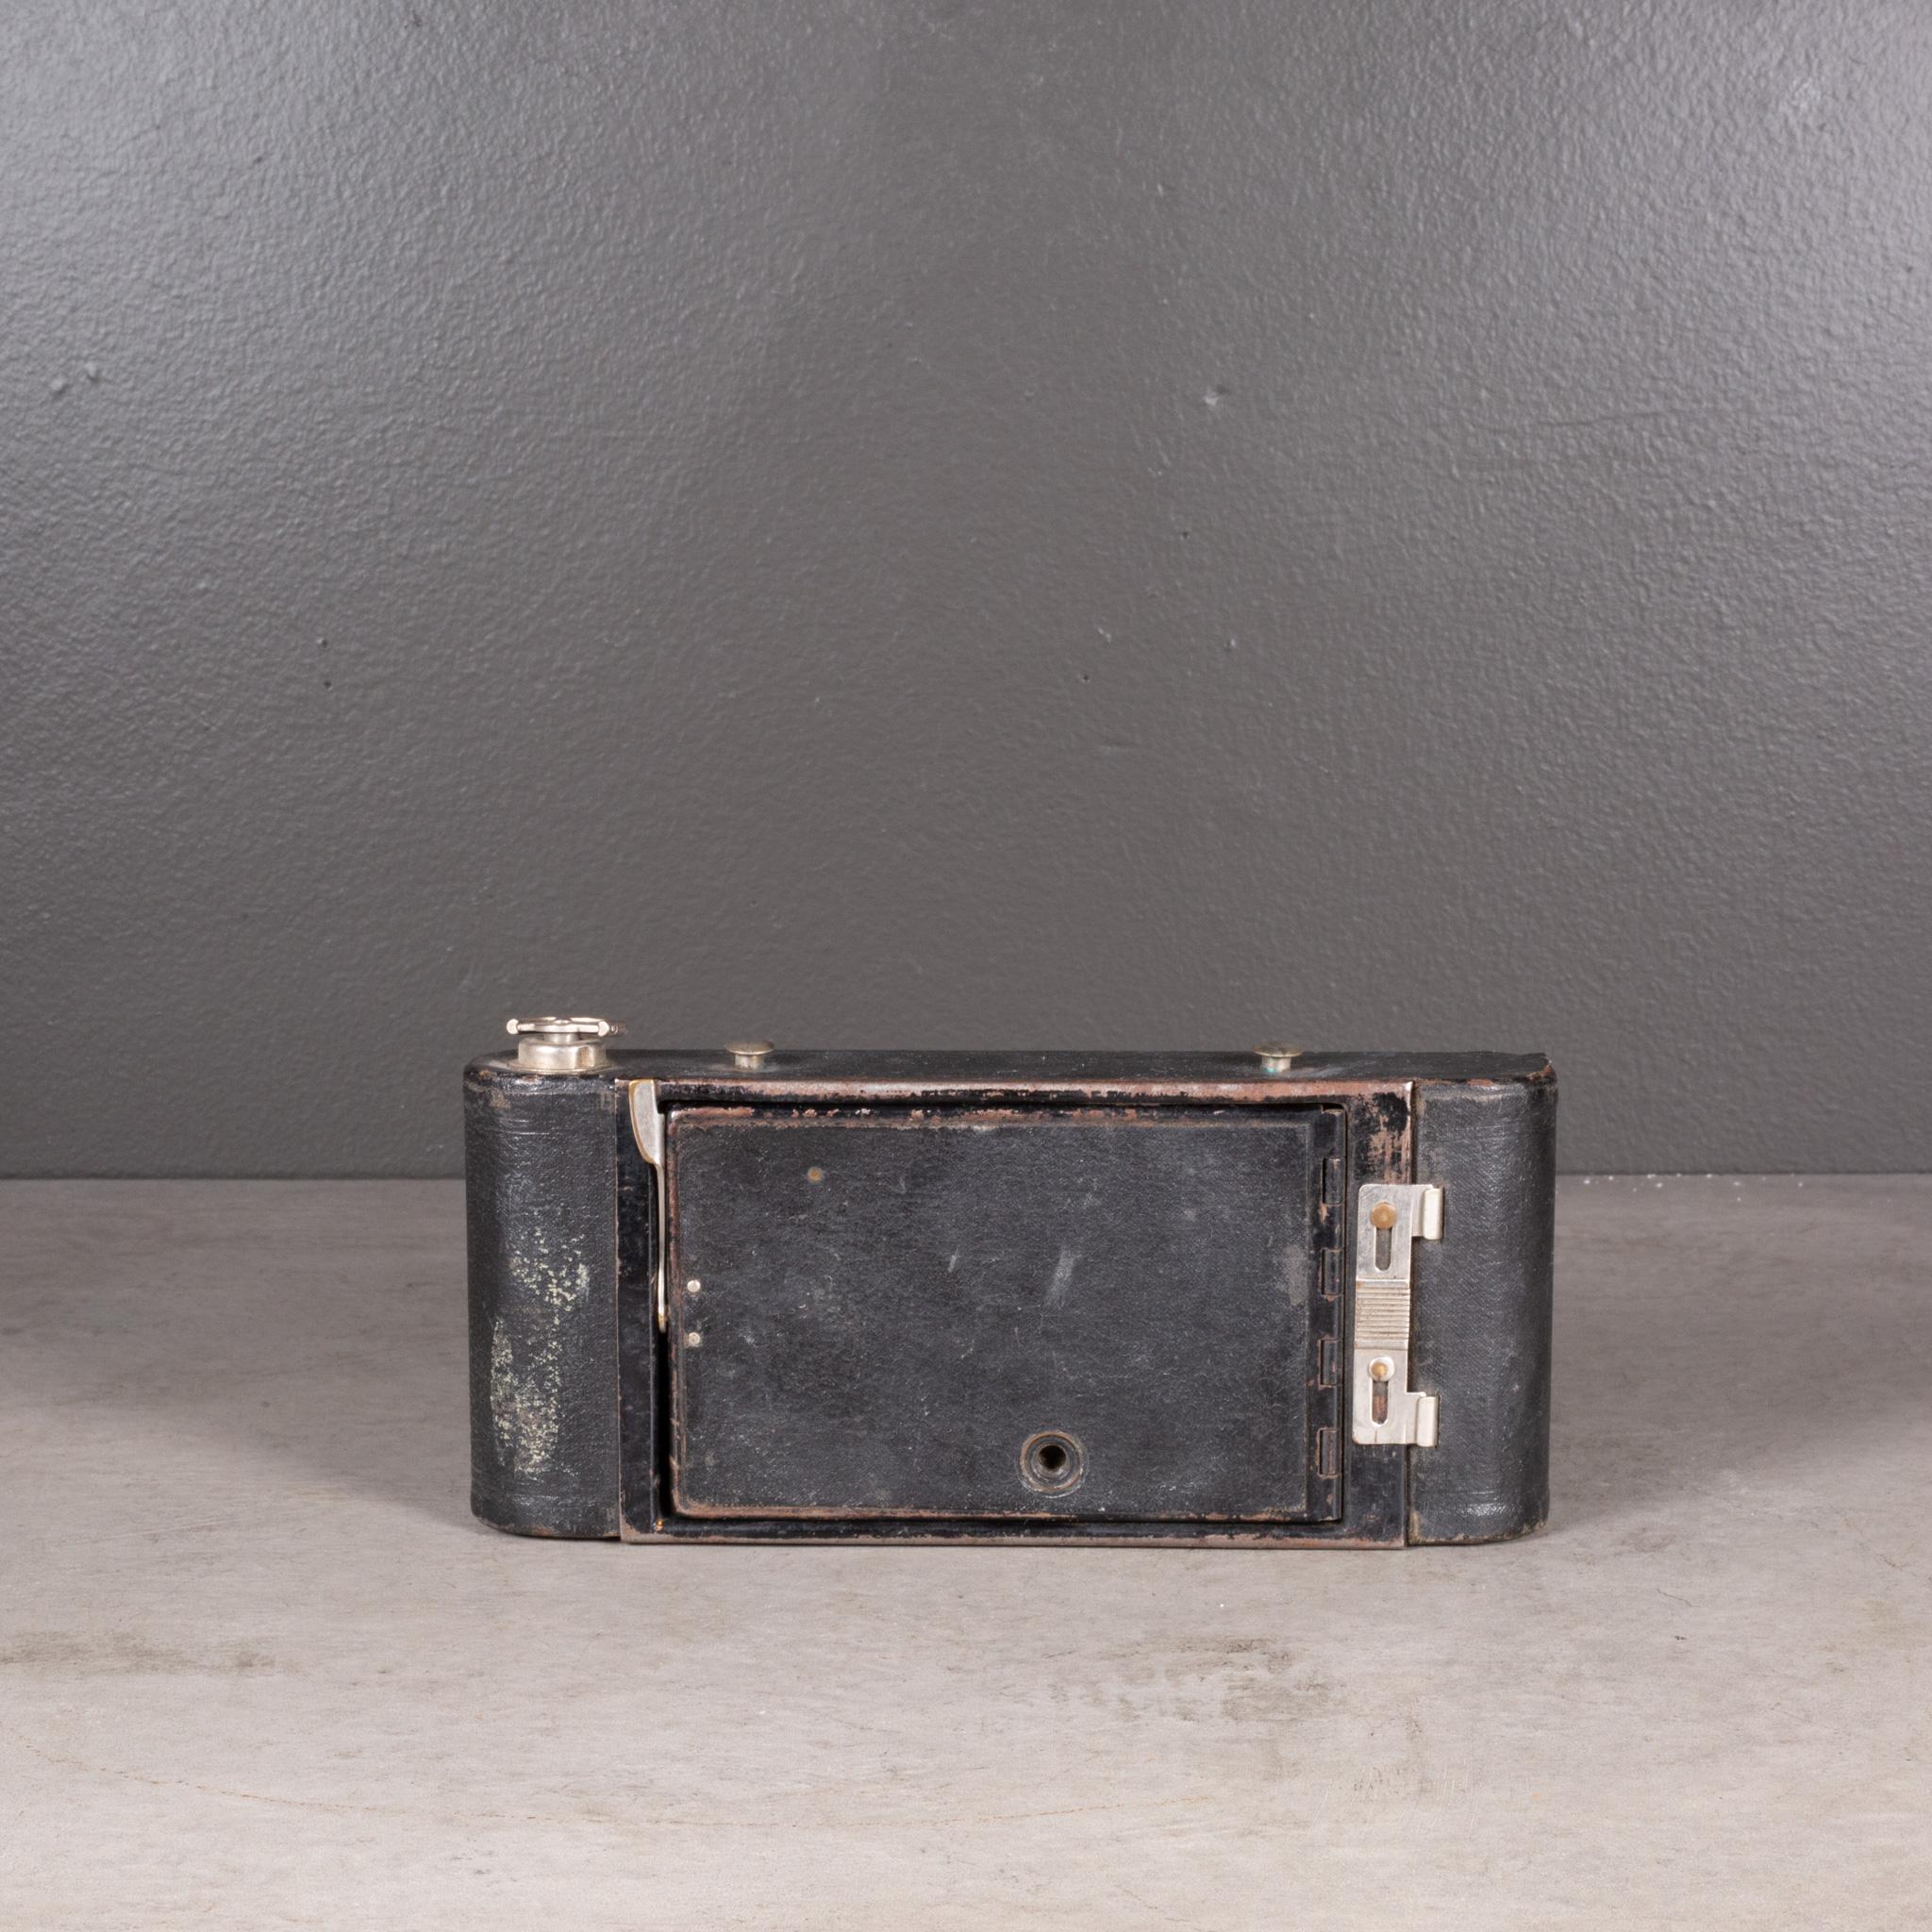 Antique Eastman Kodak 